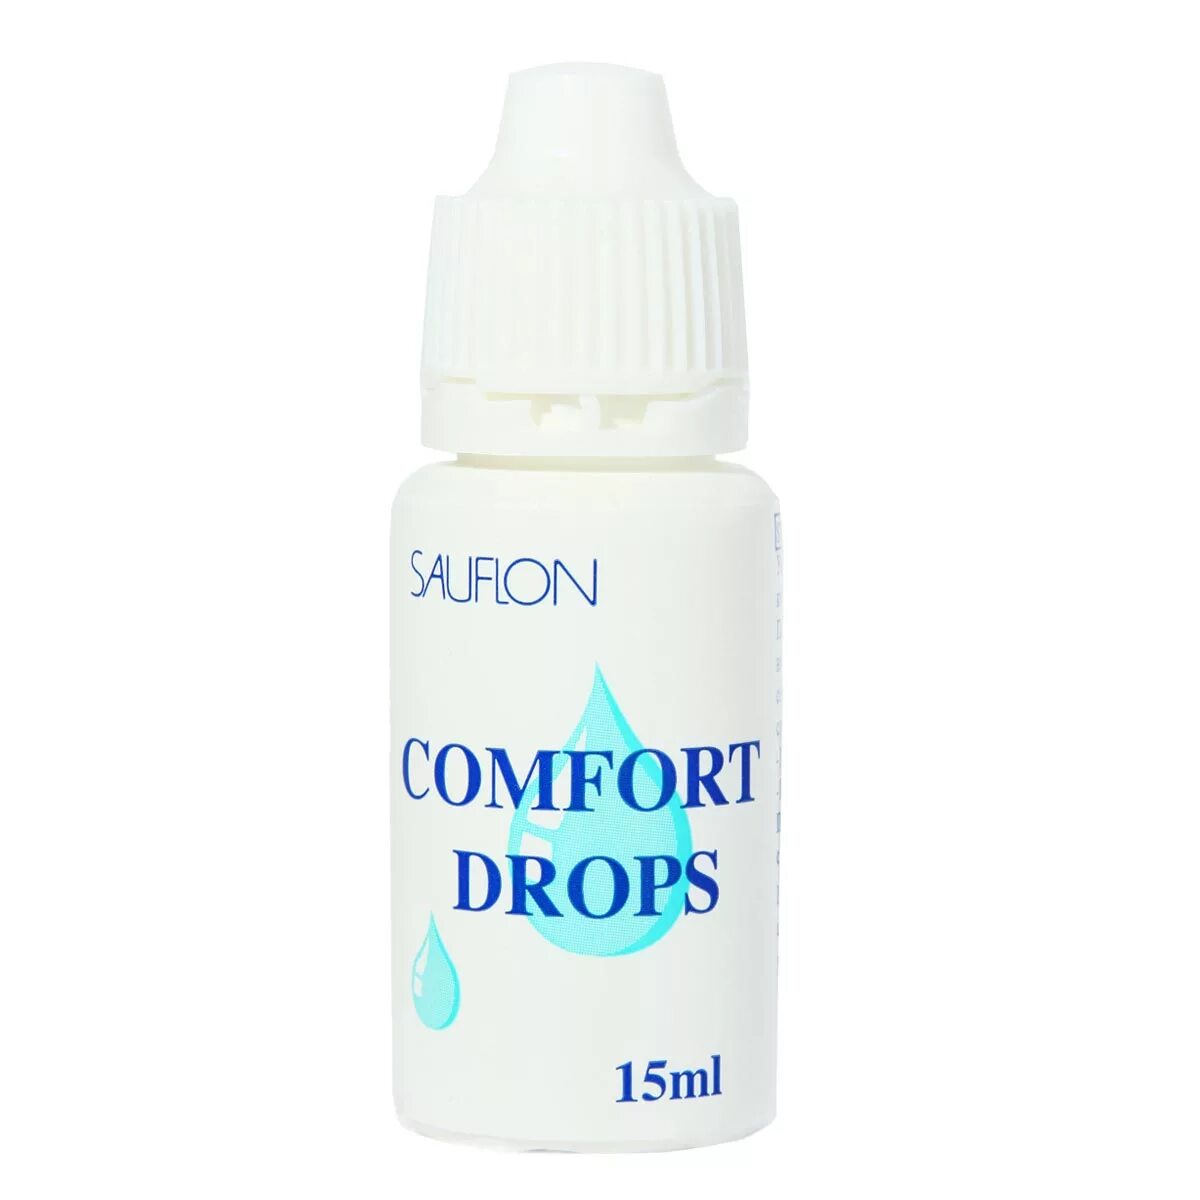 Comfort Drops 15 ml. Avizor Comfort Drops 15 мл. Sauflon Comfort Drops. • Comfort Drops от Sauflon;.